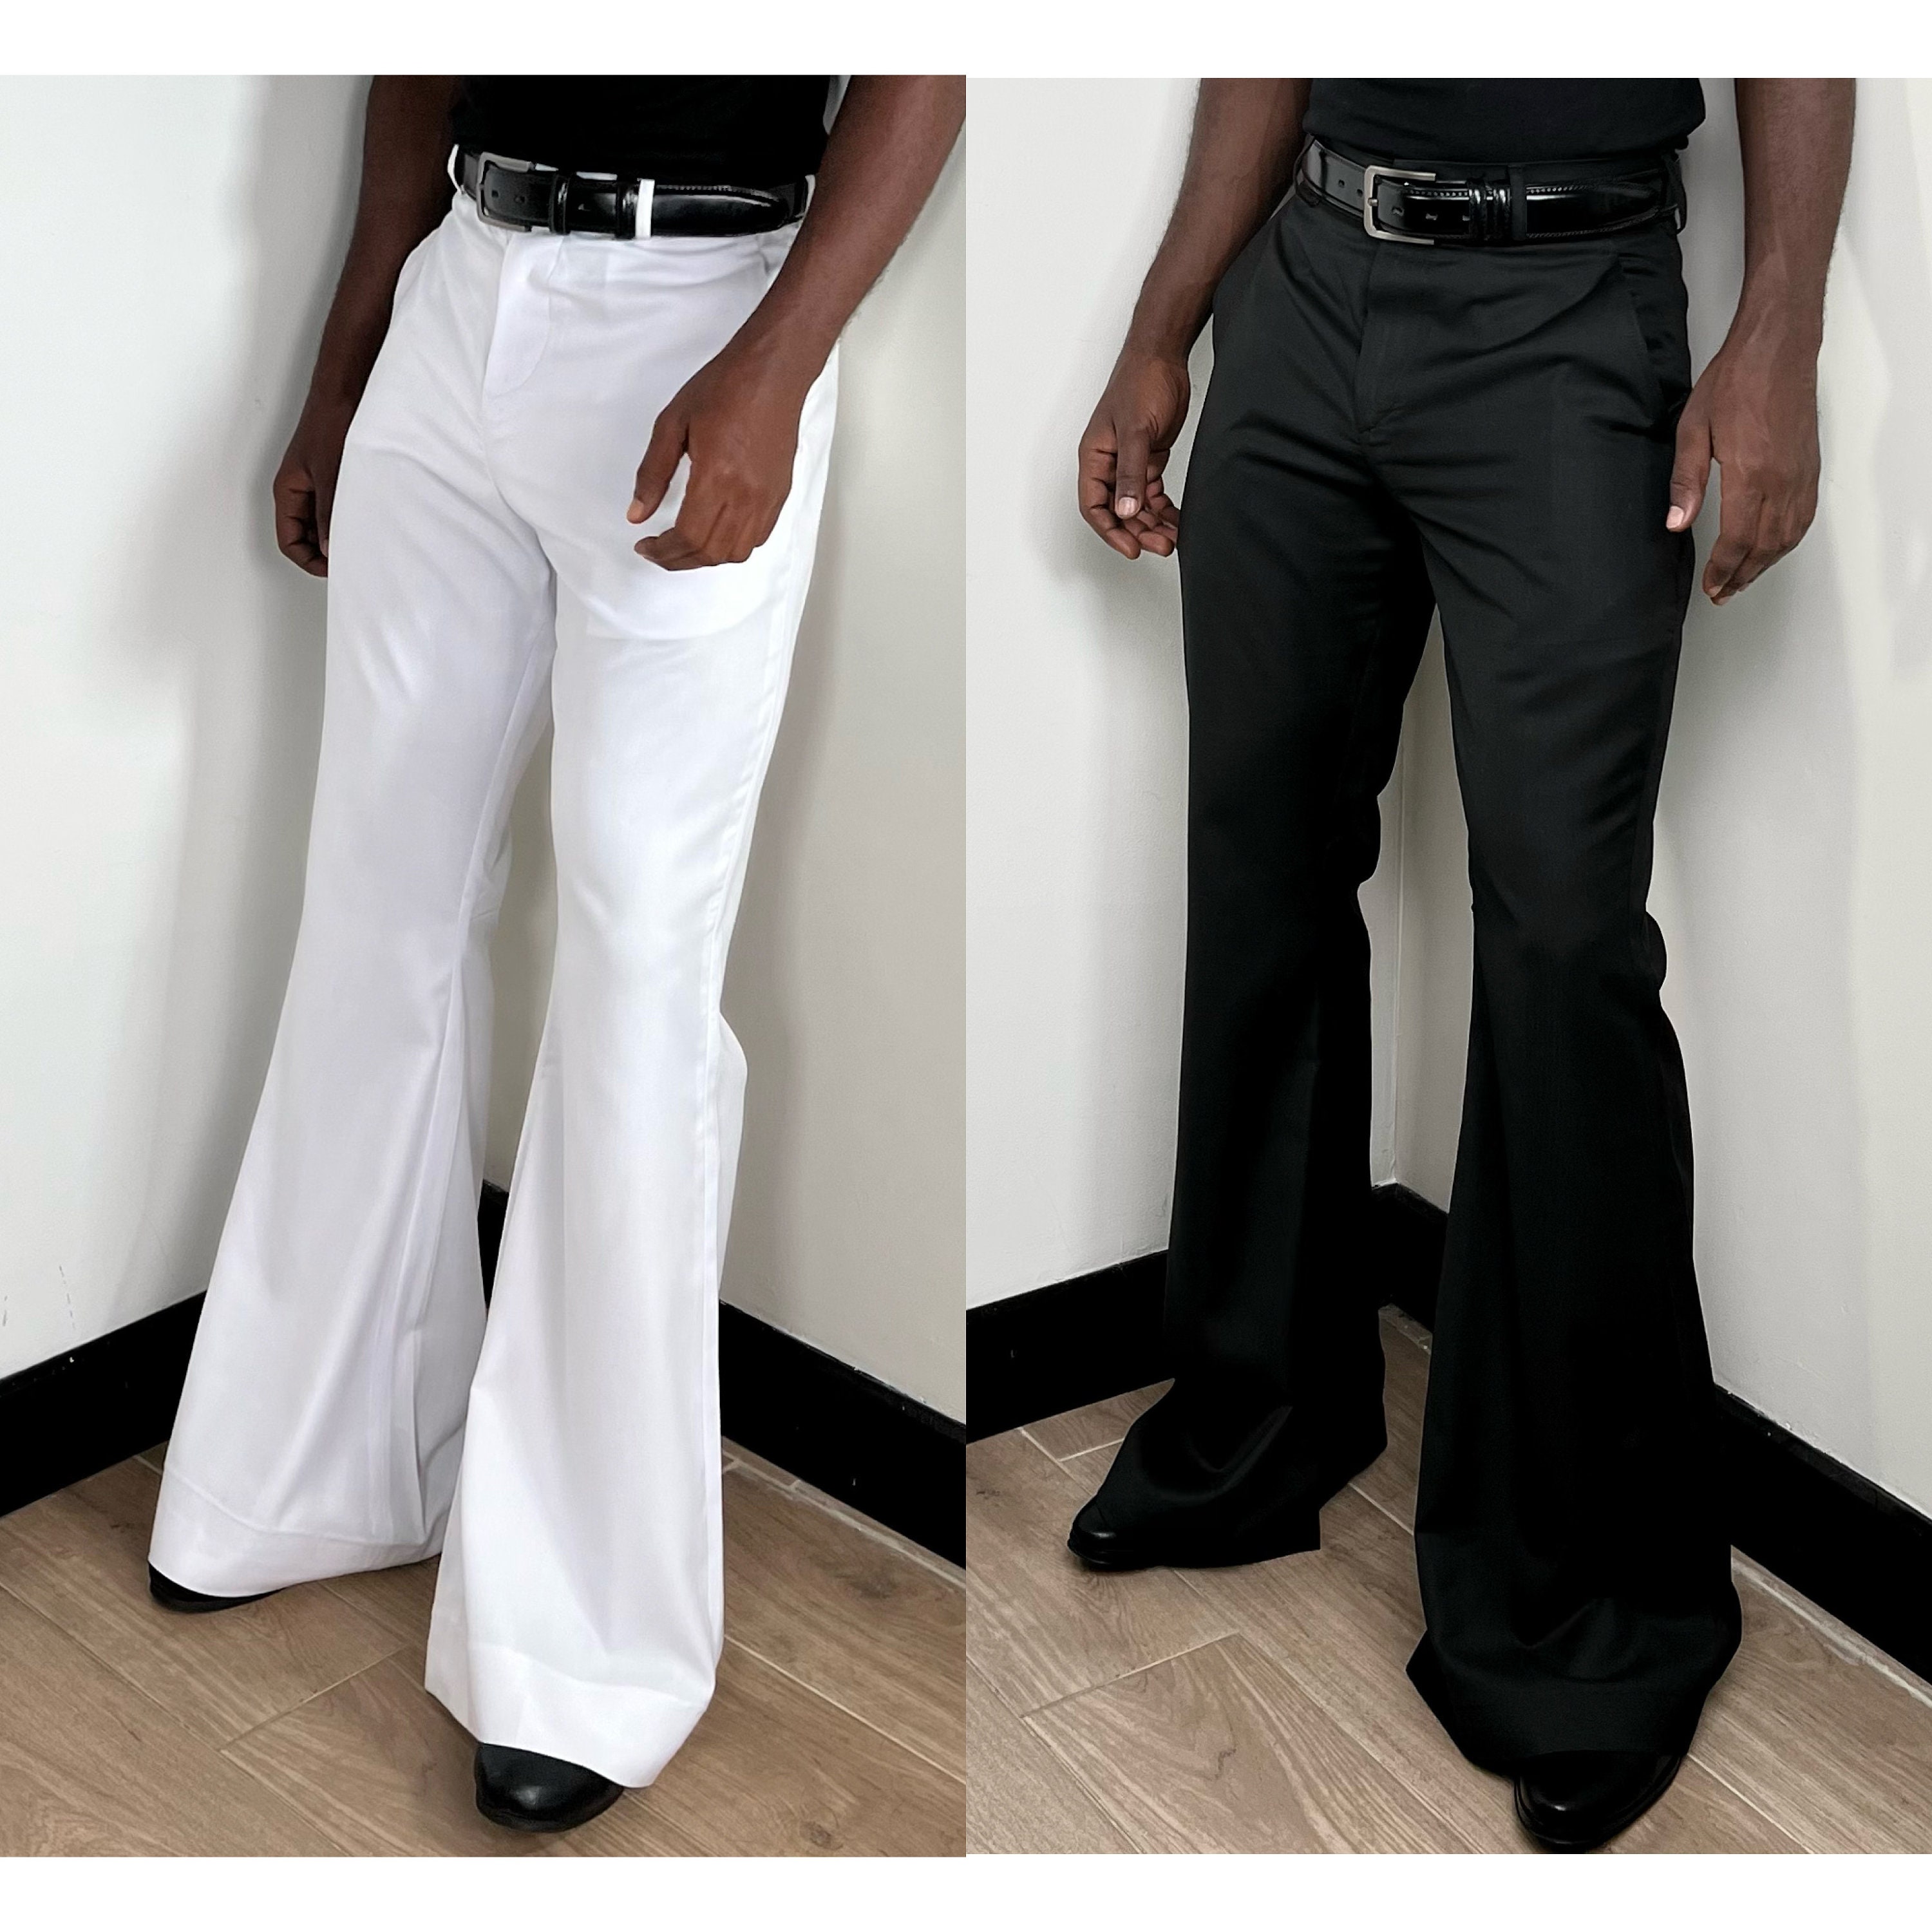 Yves Saint Laurent Bell Bottom Men white denim Jeans with black stitching  29/30 | eBay